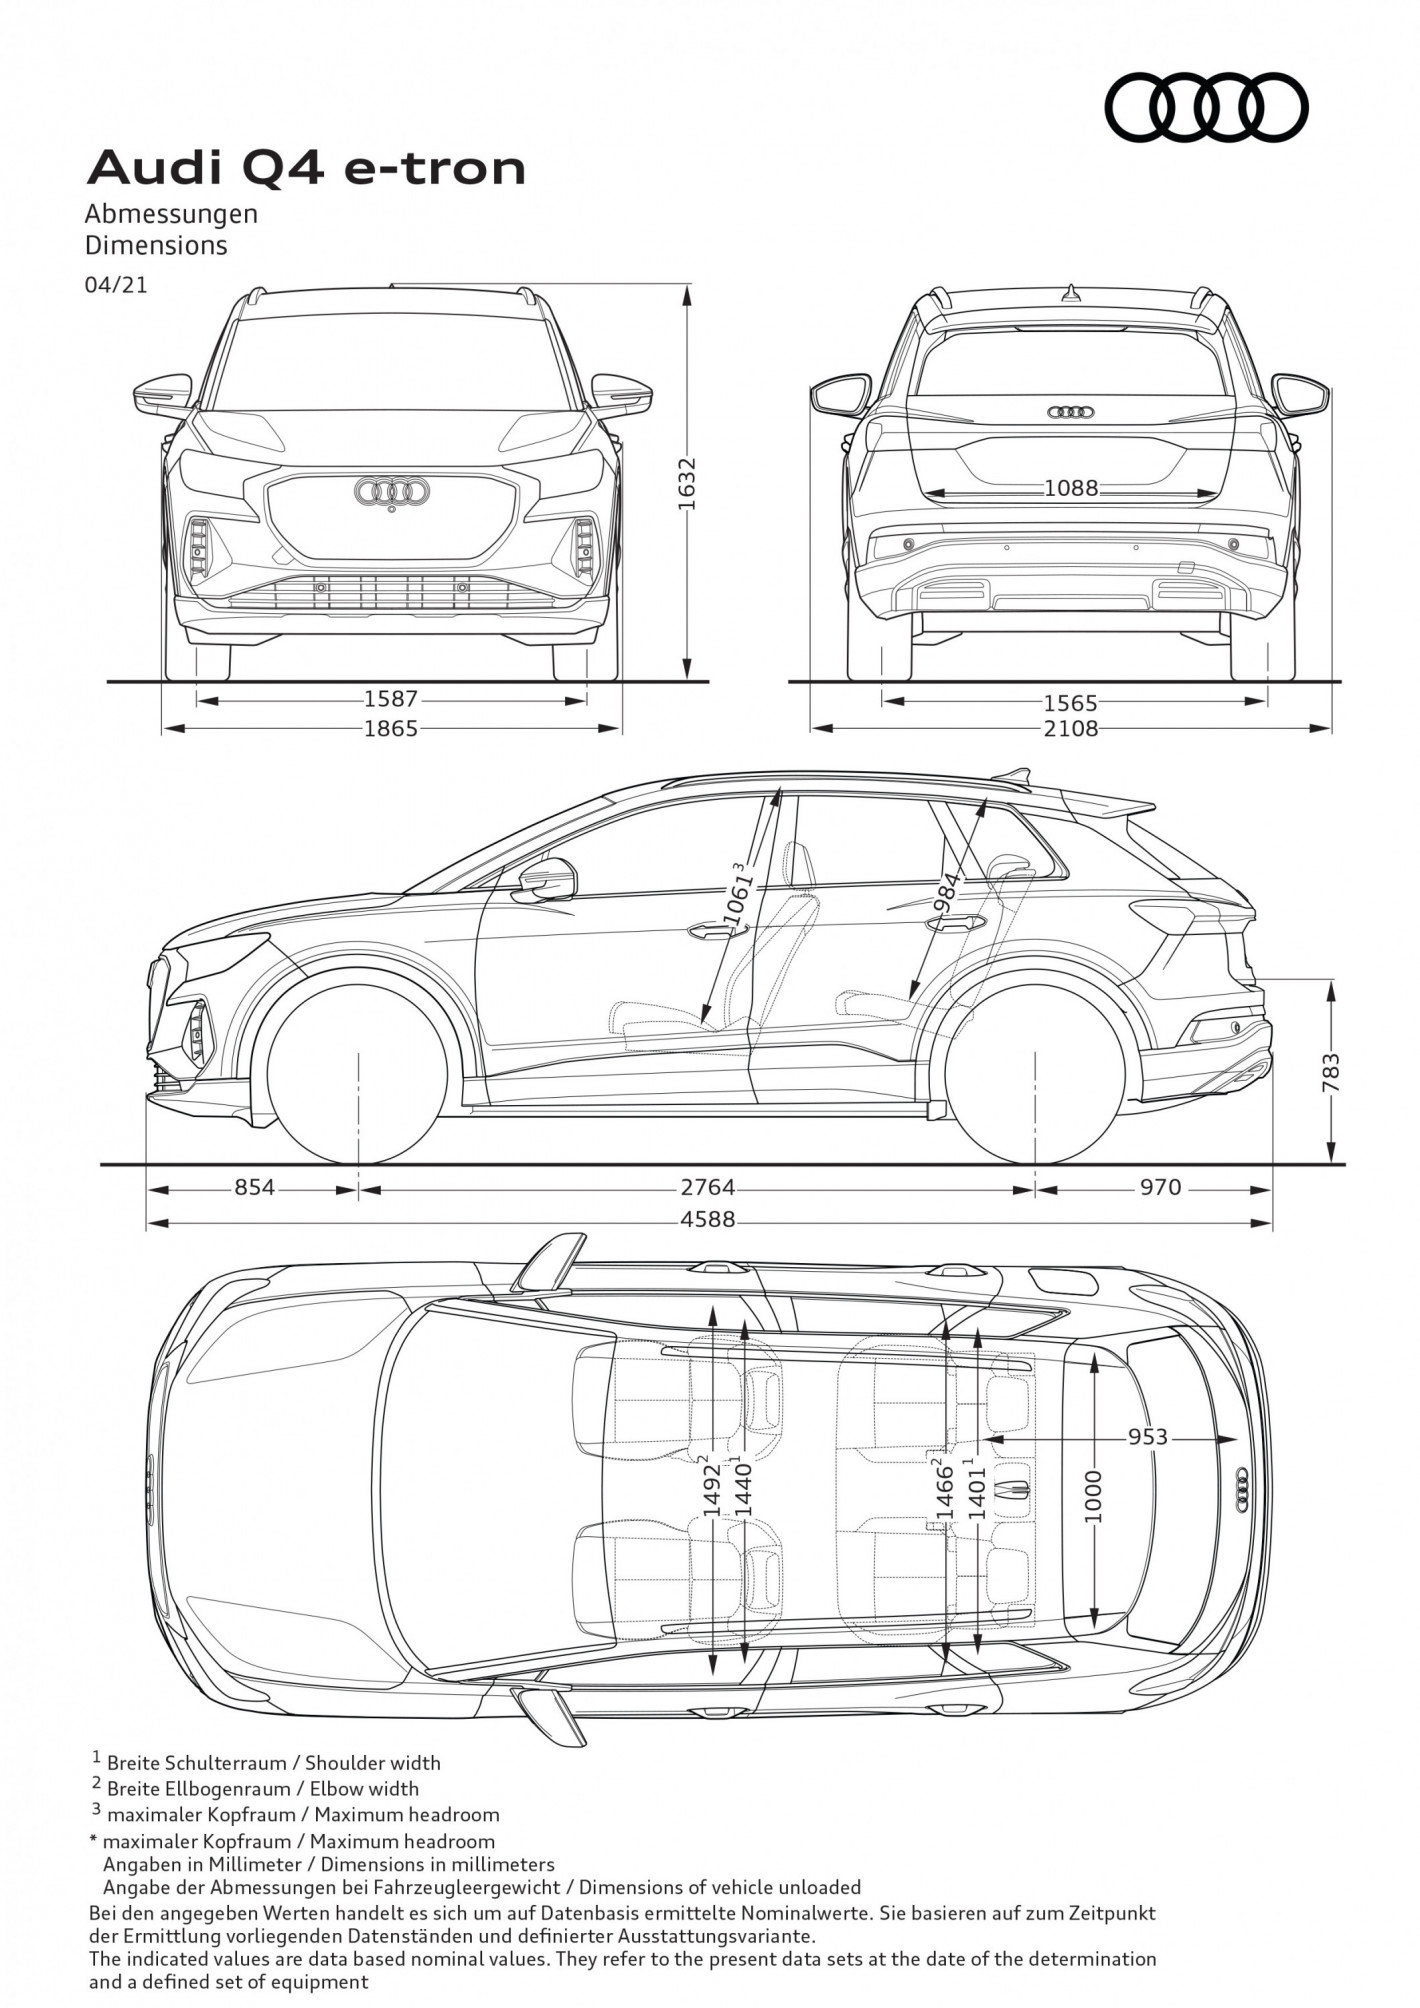 Audi Q4 e-tron dimension